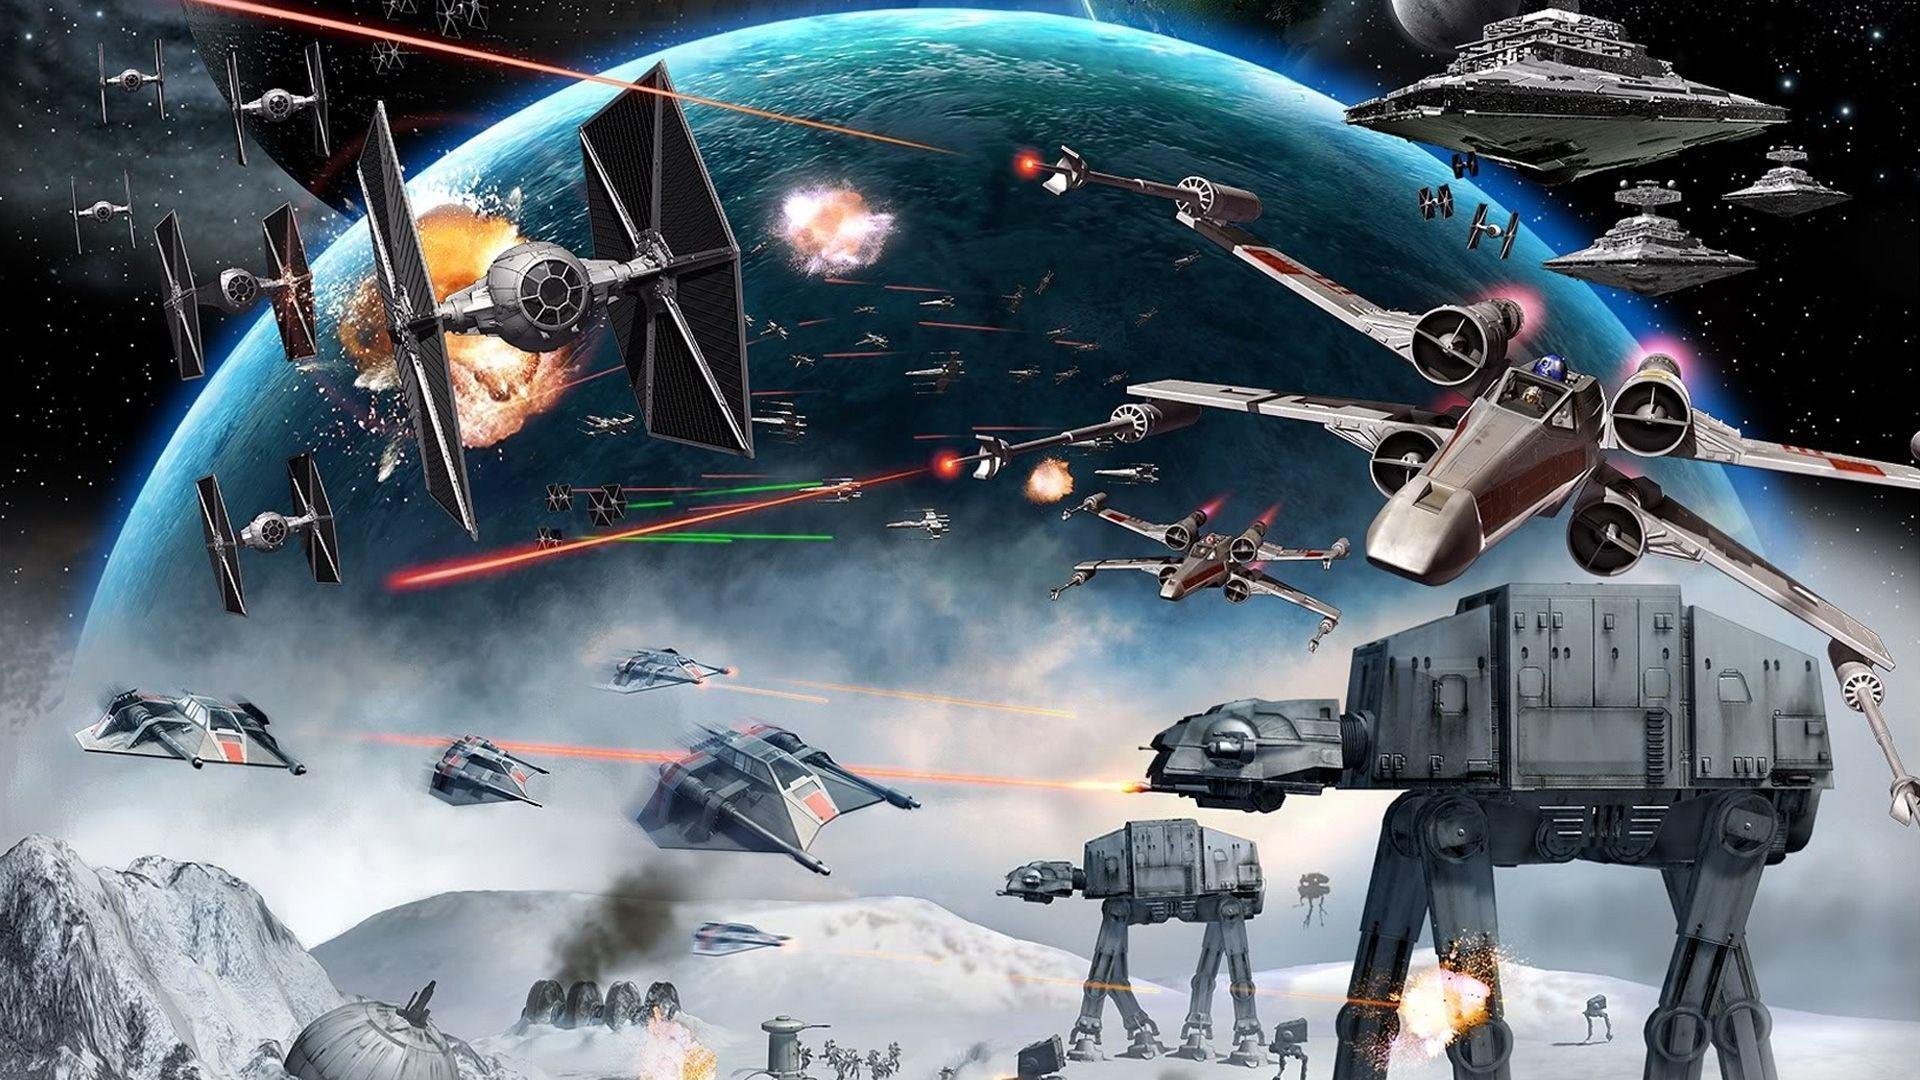 Star Wars Wallpaper HD 1080P iPhone New Star Wars